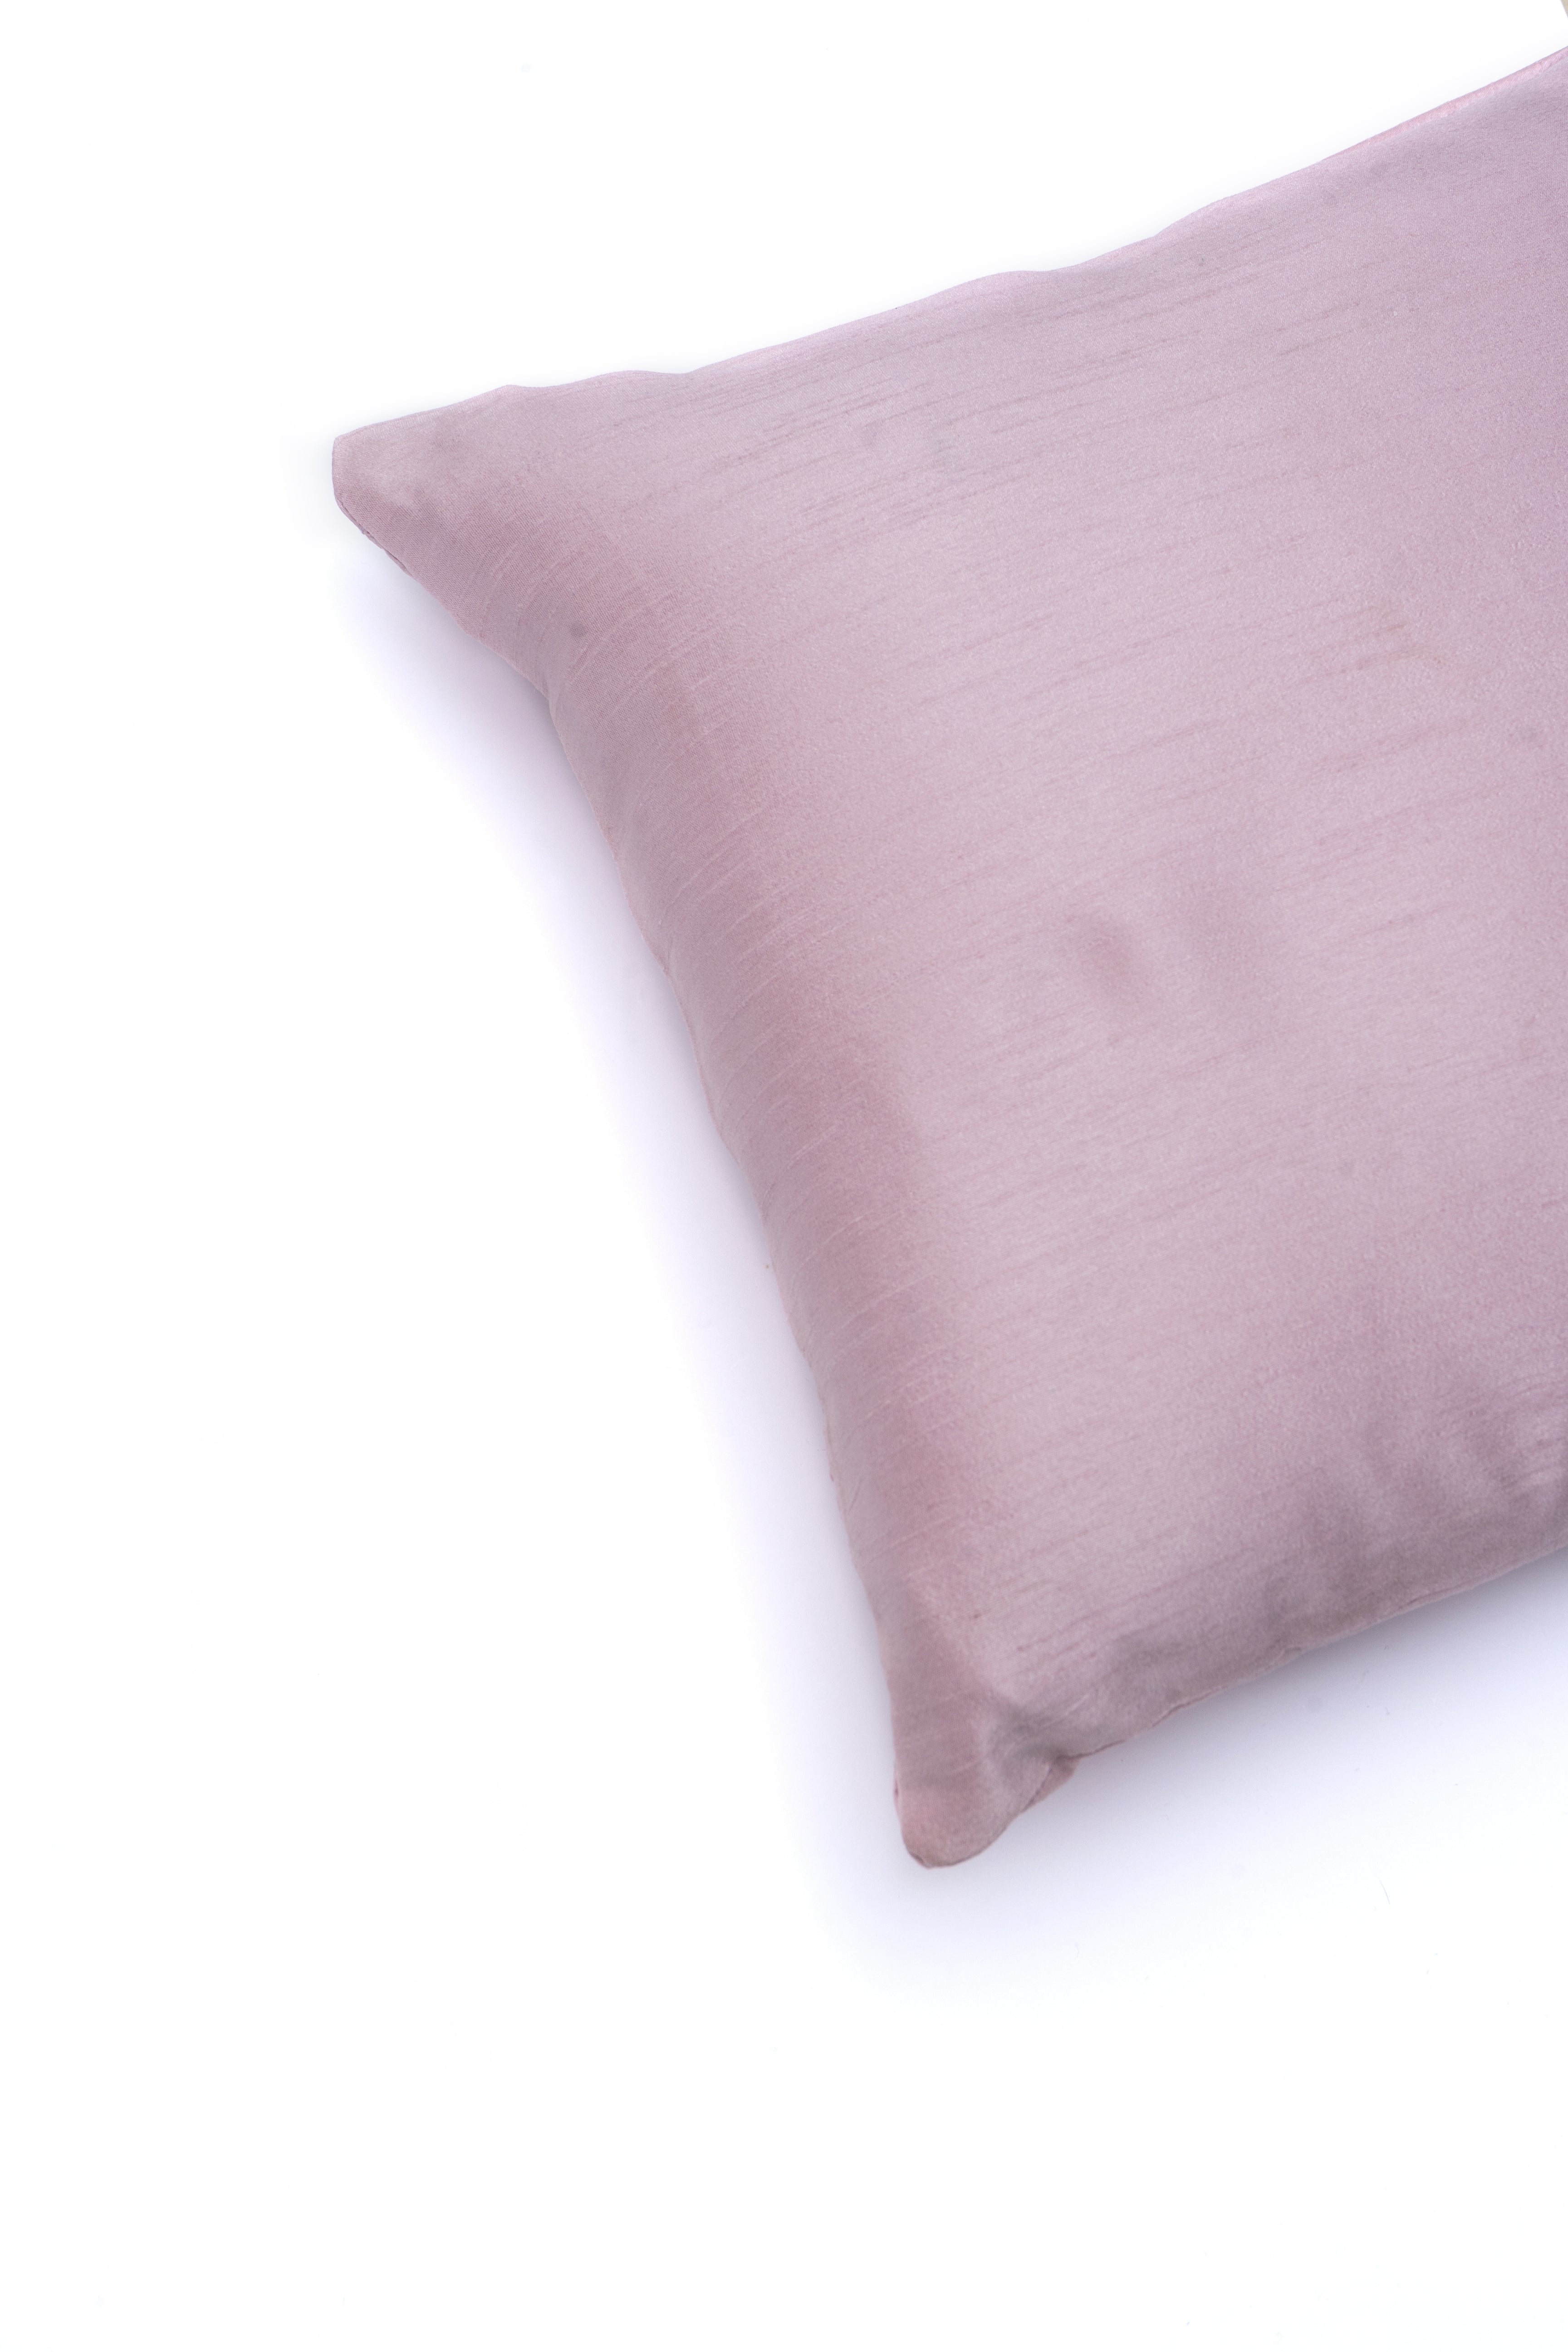 Lavender Plain Cushion Cover